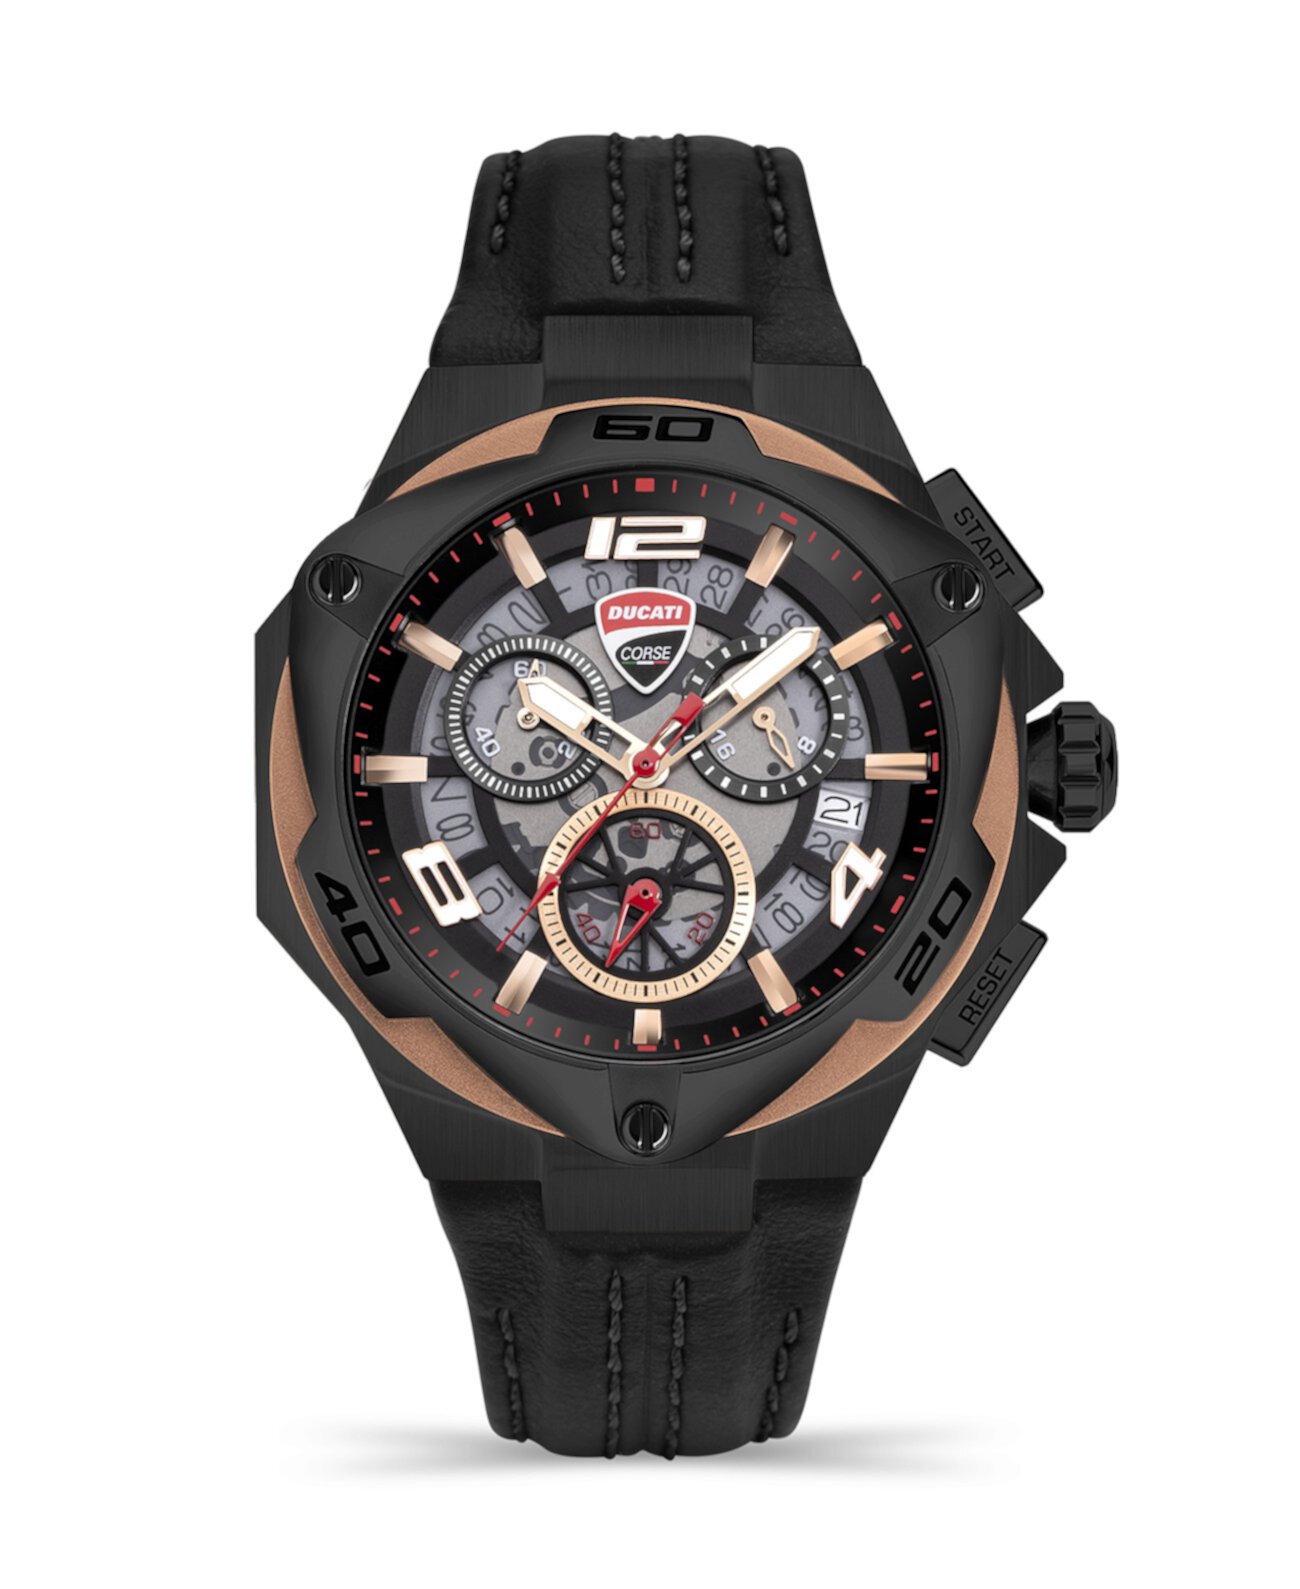 Мужские часы Motore Chronograph Collection с черным ремешком из натуральной кожи, 49 мм Ducati Corse